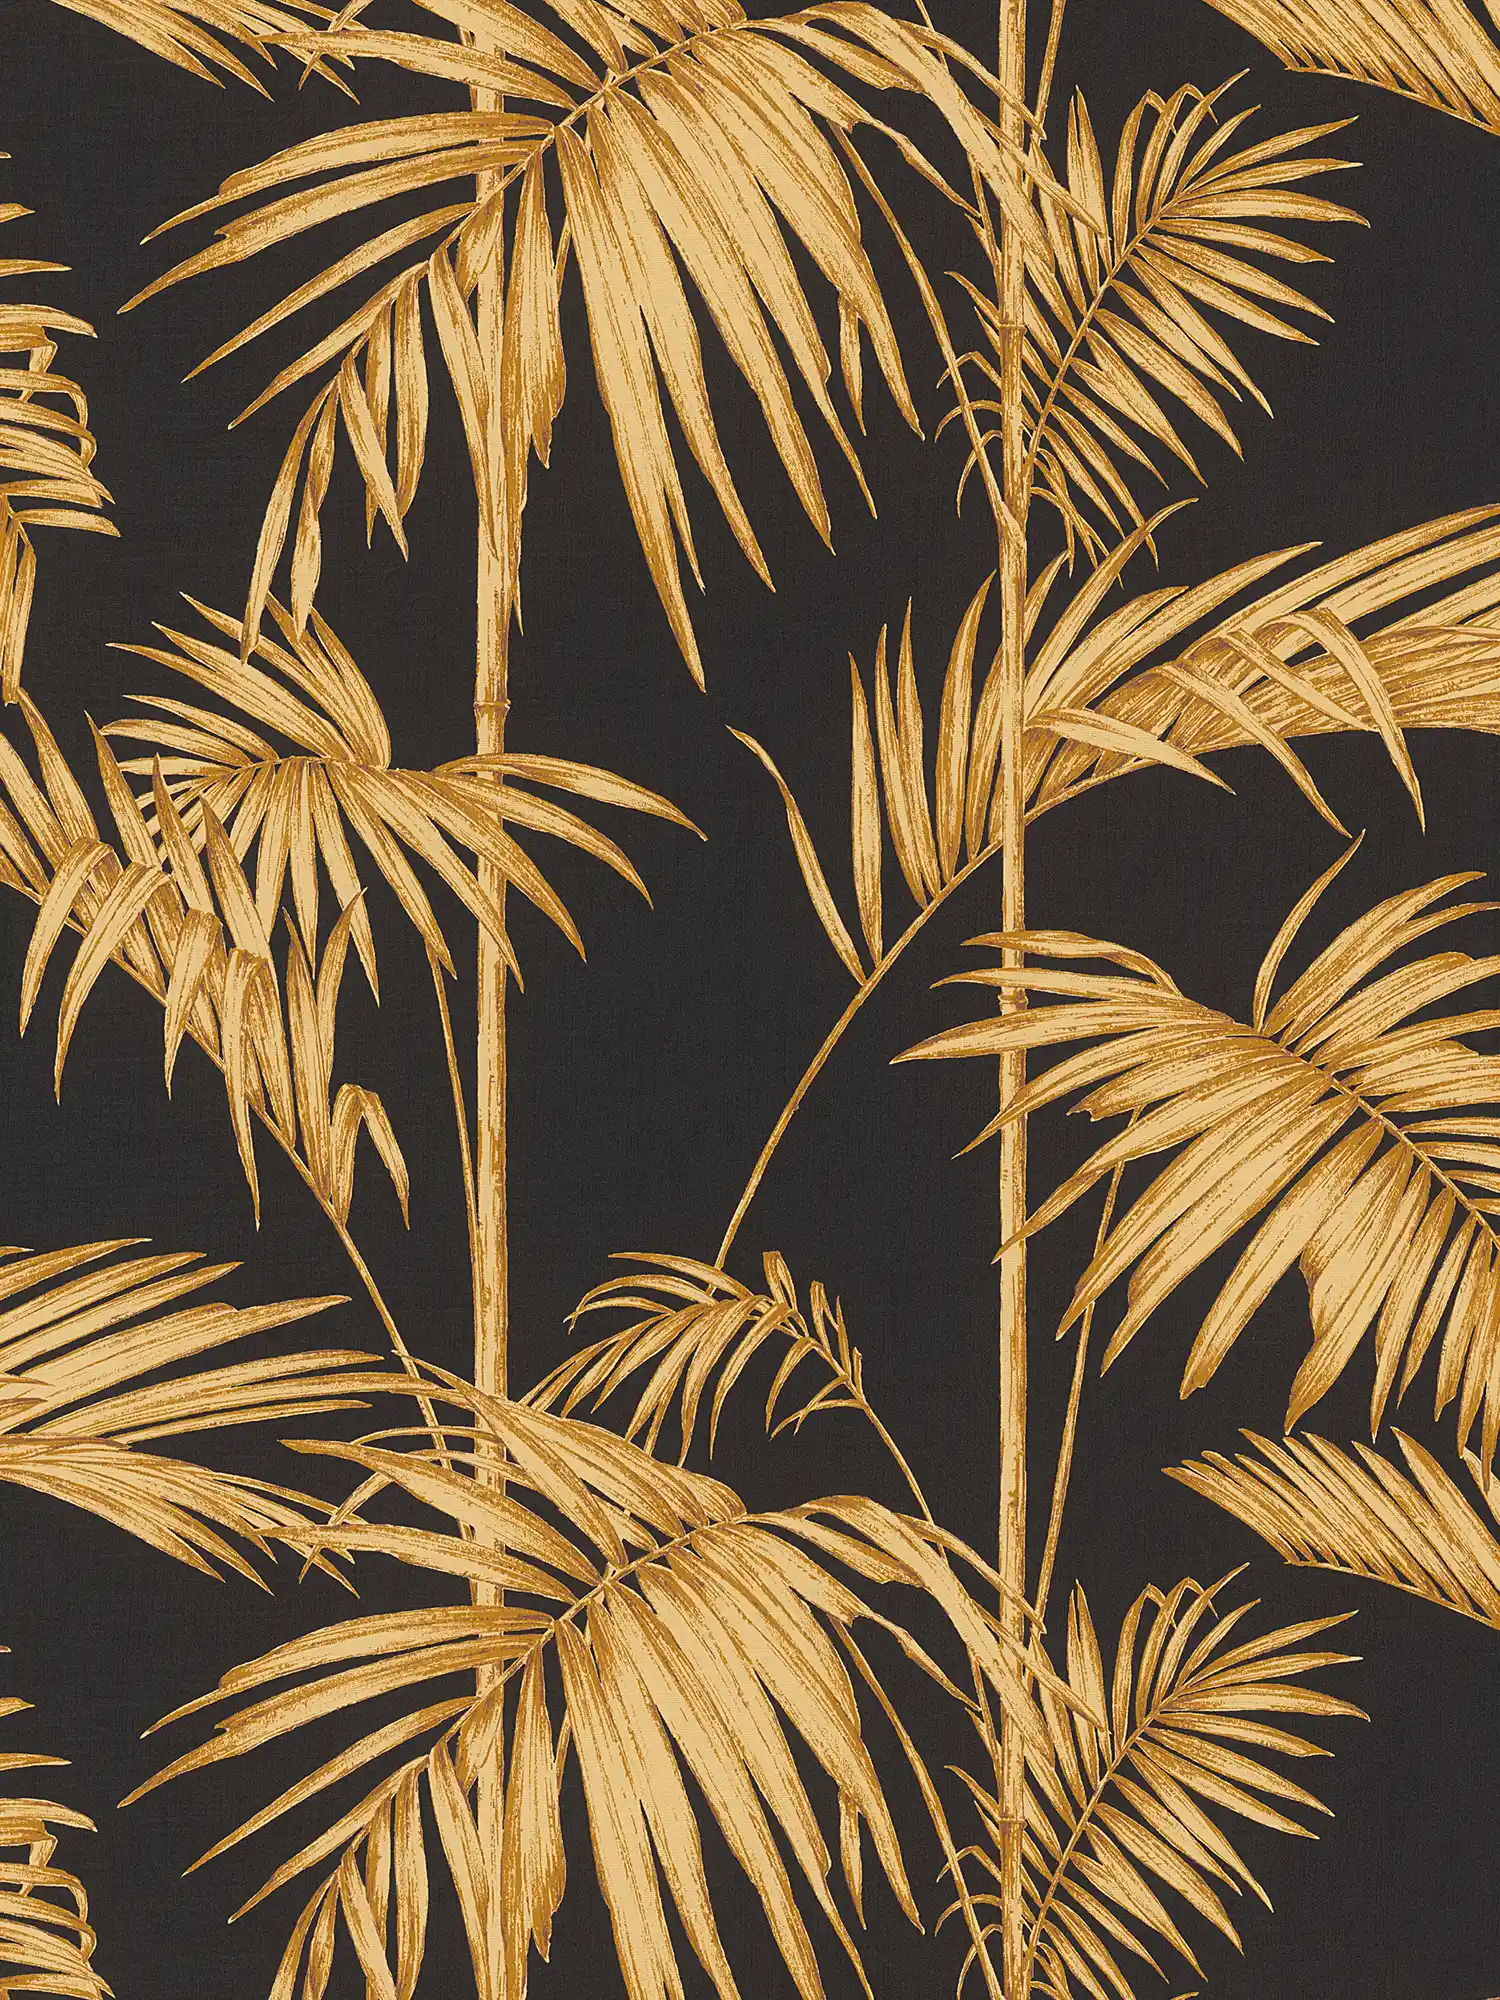         Natürliche Tapete Palmenblätter, Bambus – Gold, Schwarz, Orange
    